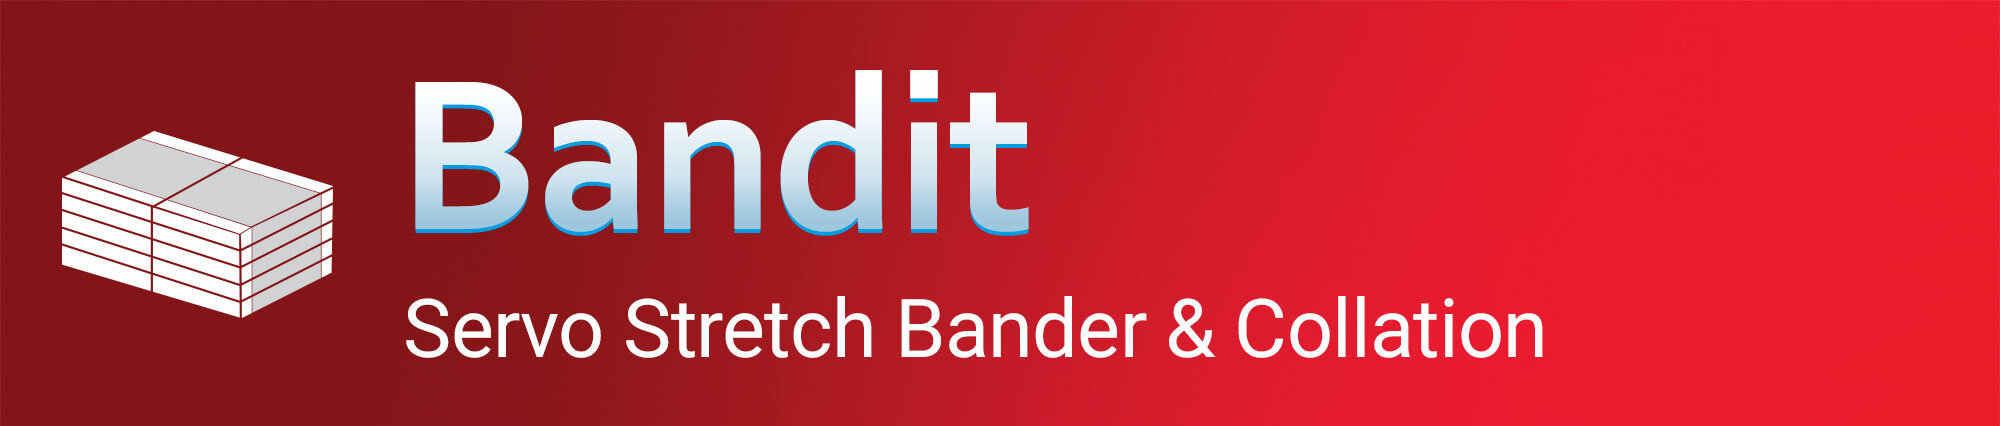 Bandit - Servo bandder - Banner